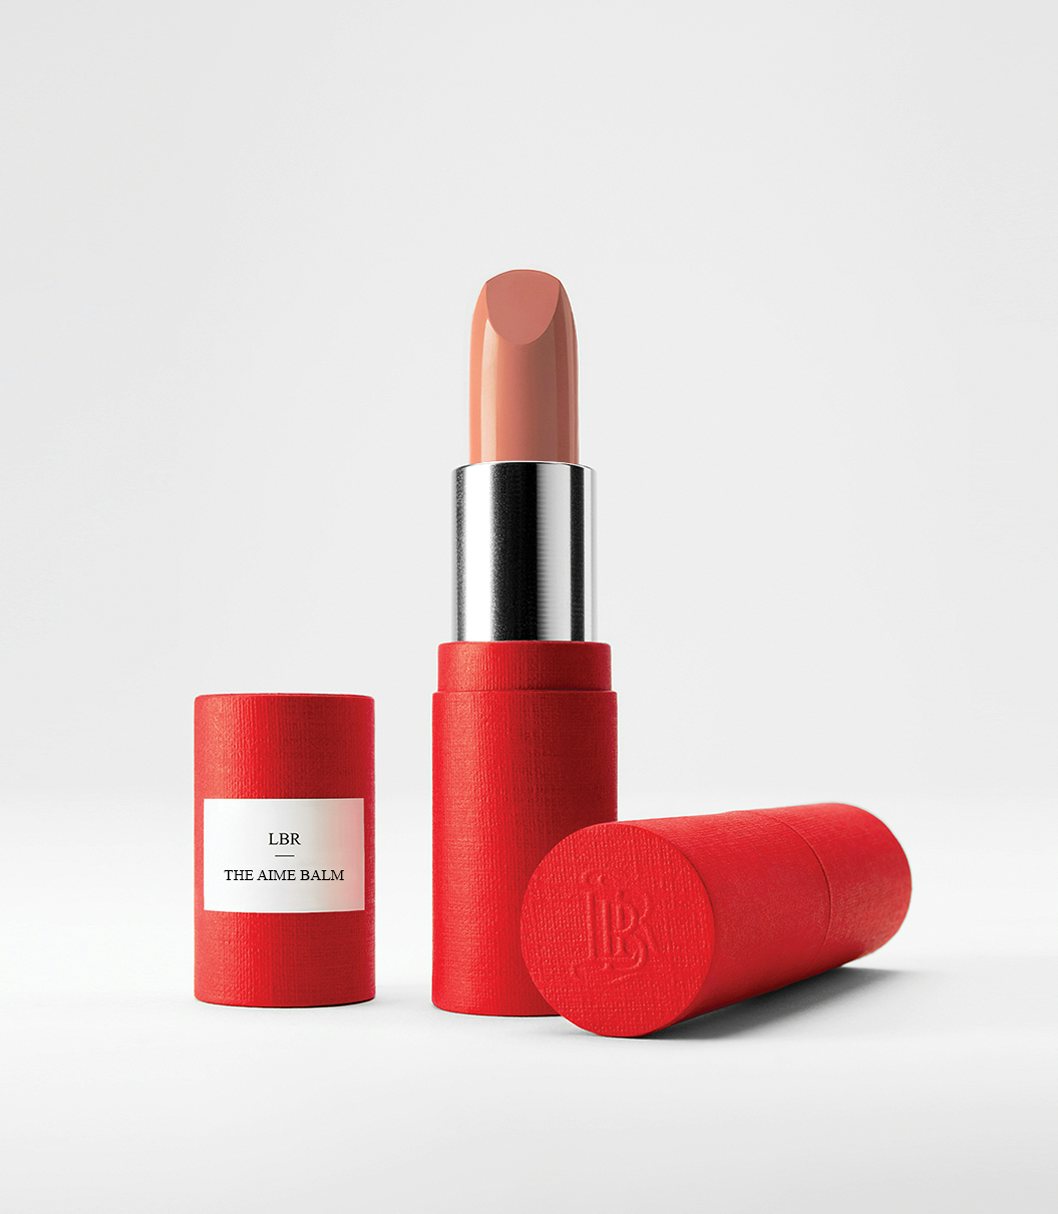 La bouche rouge The Aime balm lipstick in the red paper case